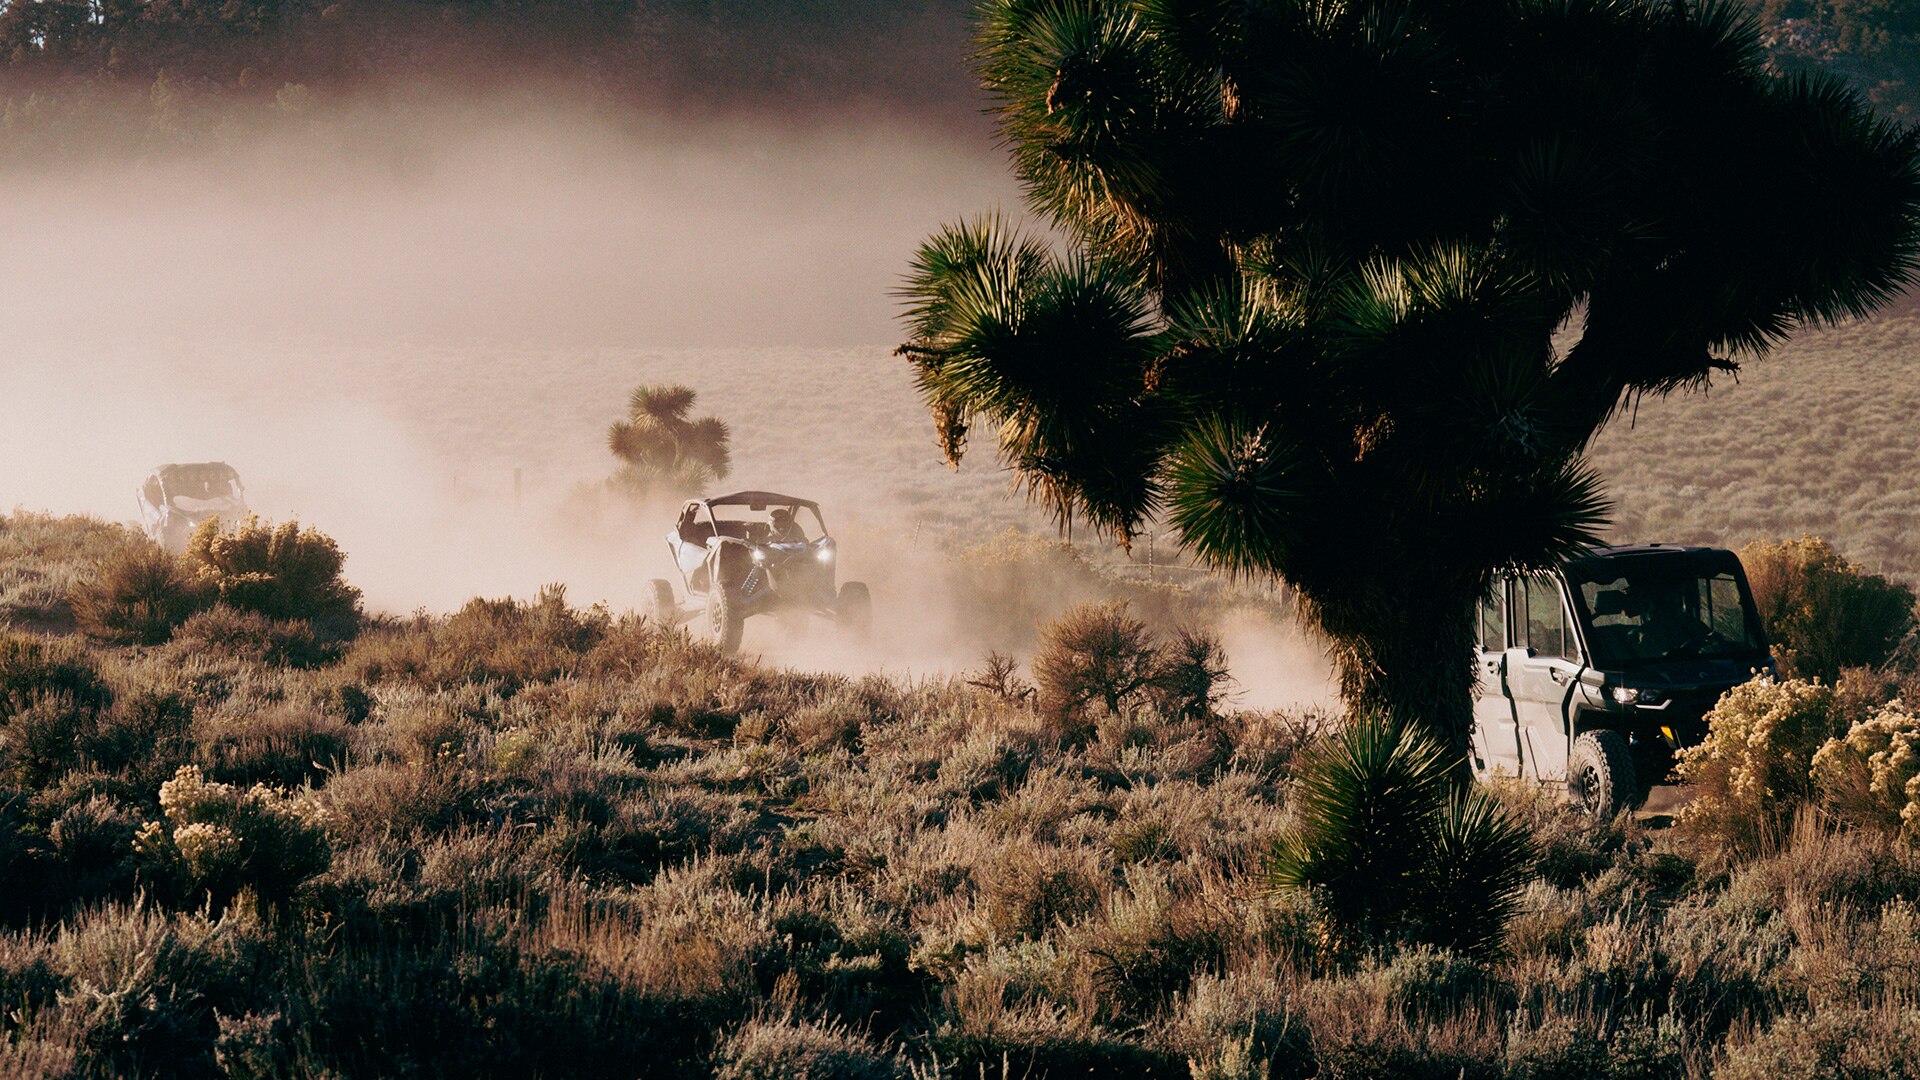 Des pilotes dans des véhicules côte-à-côte Can-Am sur une piste de terre créant des nuages de poussière